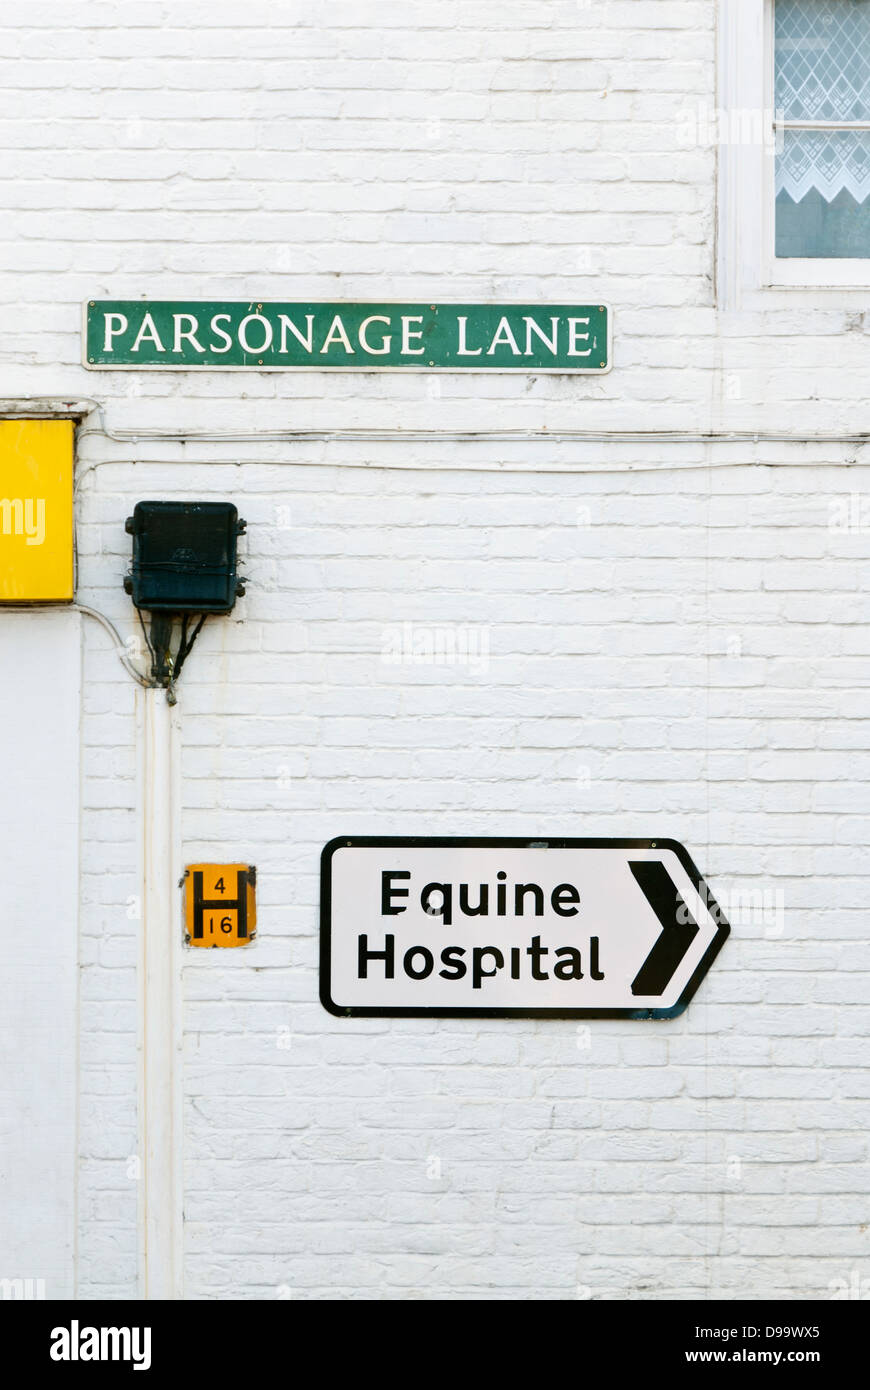 Equine hospital signe sur mur blanc, Parsonage Lane, Lambourn, West Berkshire, Angleterre, Grande-Bretagne, Royaume-Uni Banque D'Images